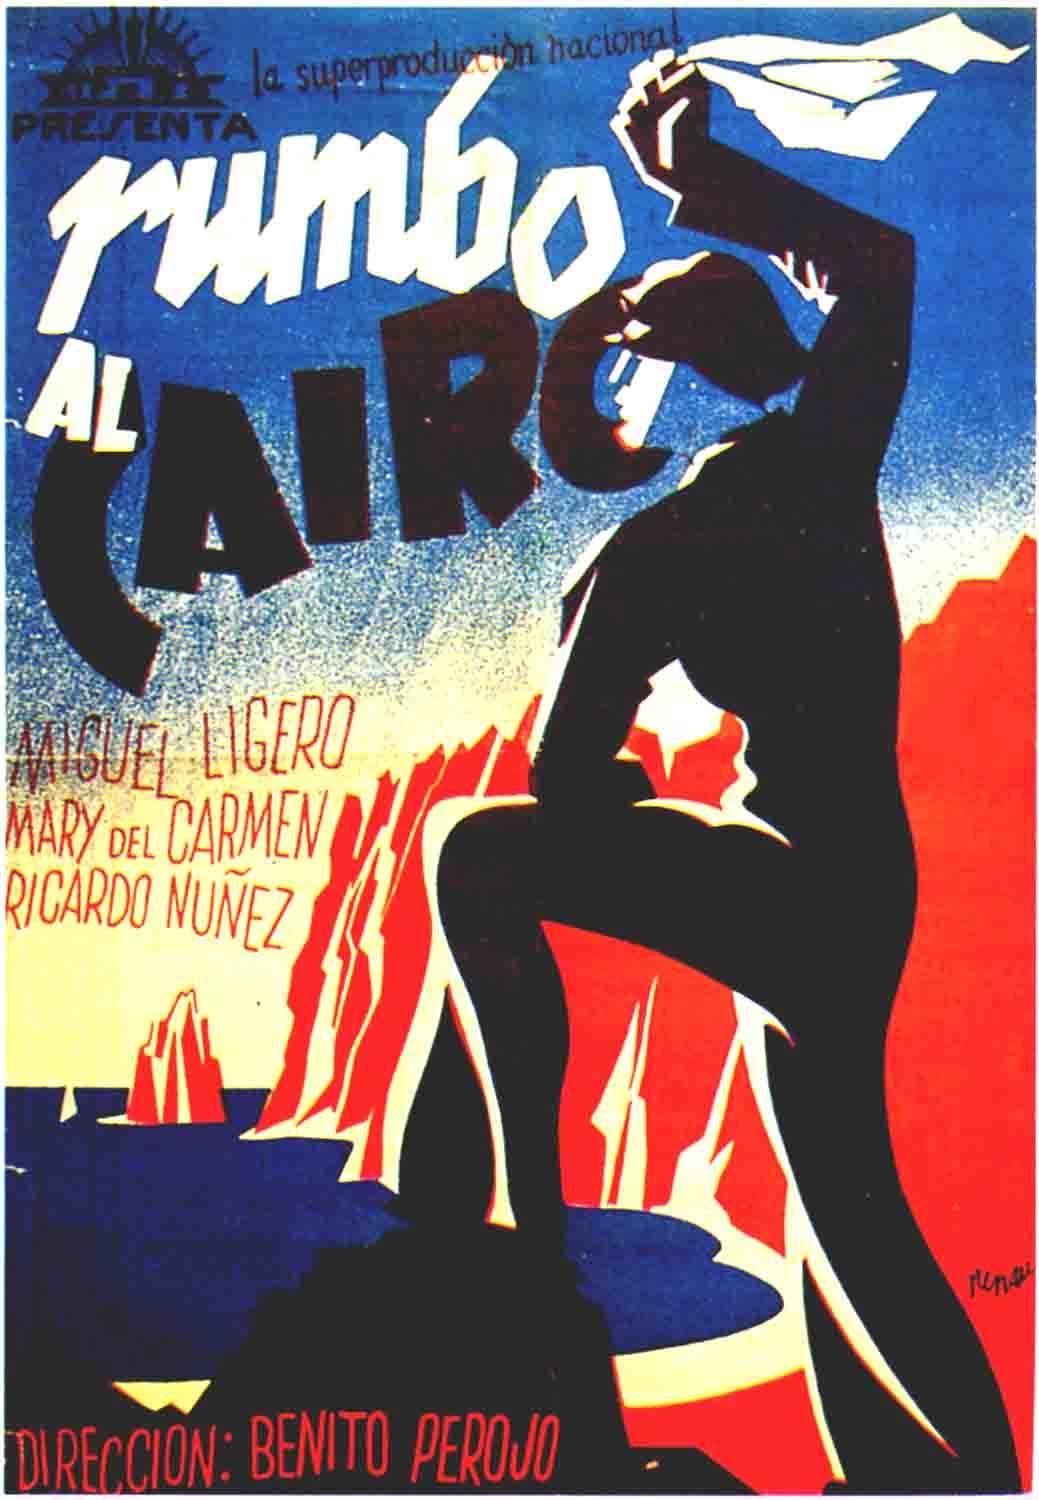 Постер фильма Rumbo al Cairo